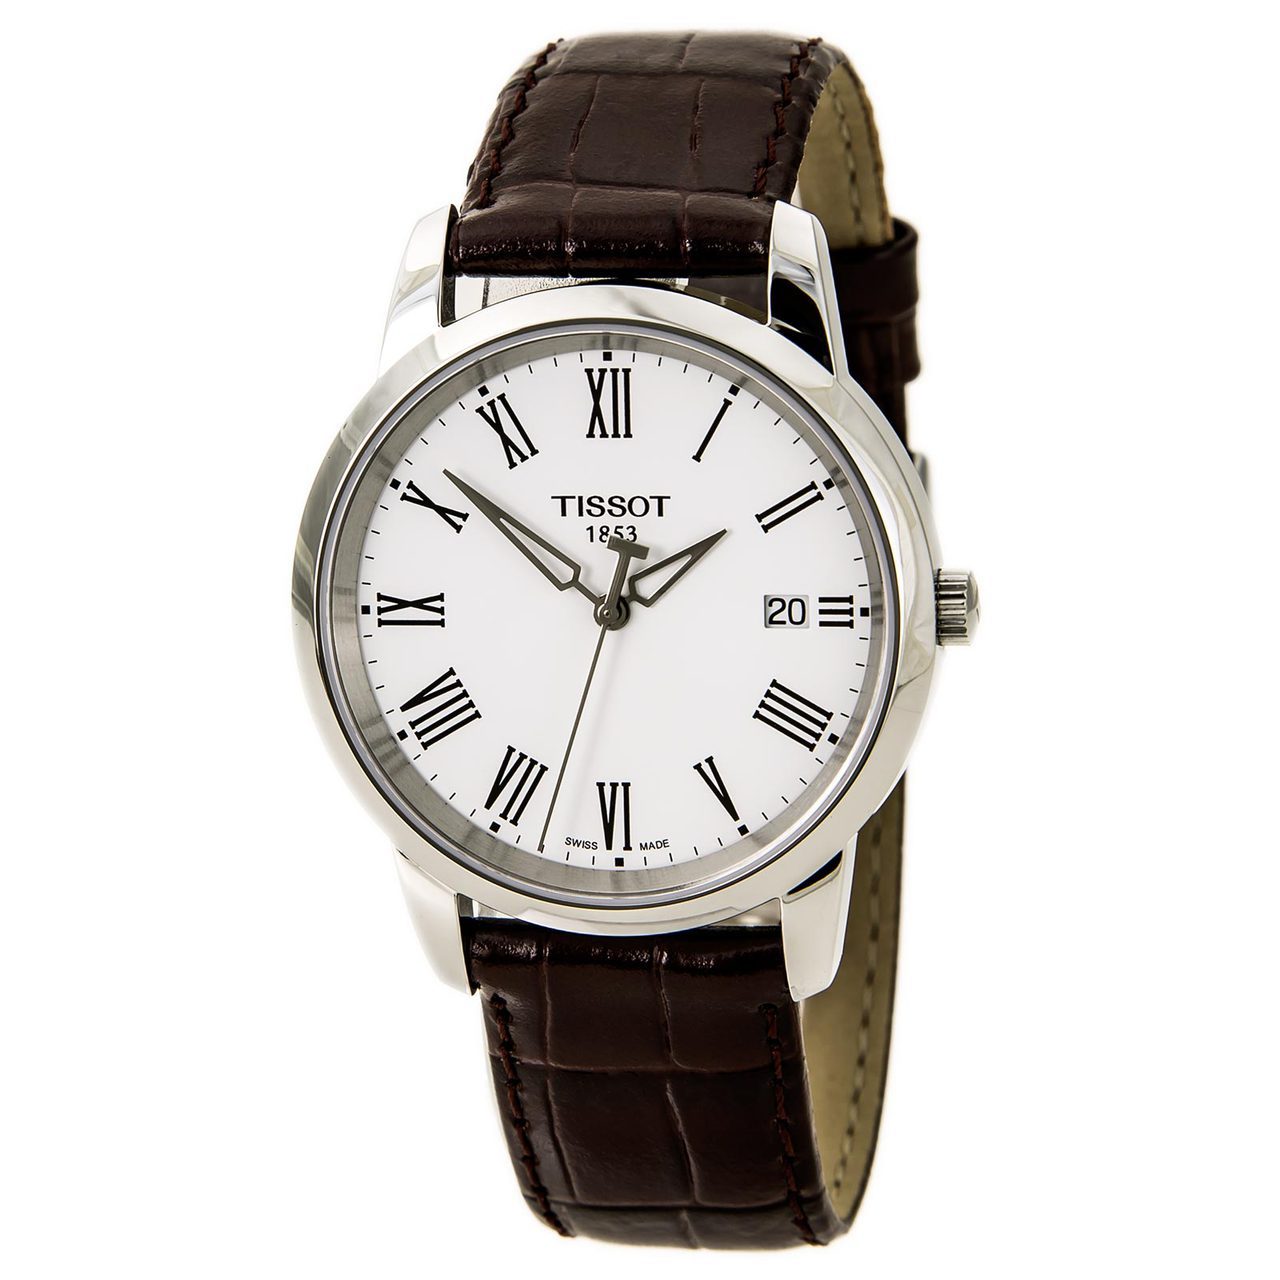 Tissot 天梭 T0334101601301 男士腕錶   特價僅售$139.83